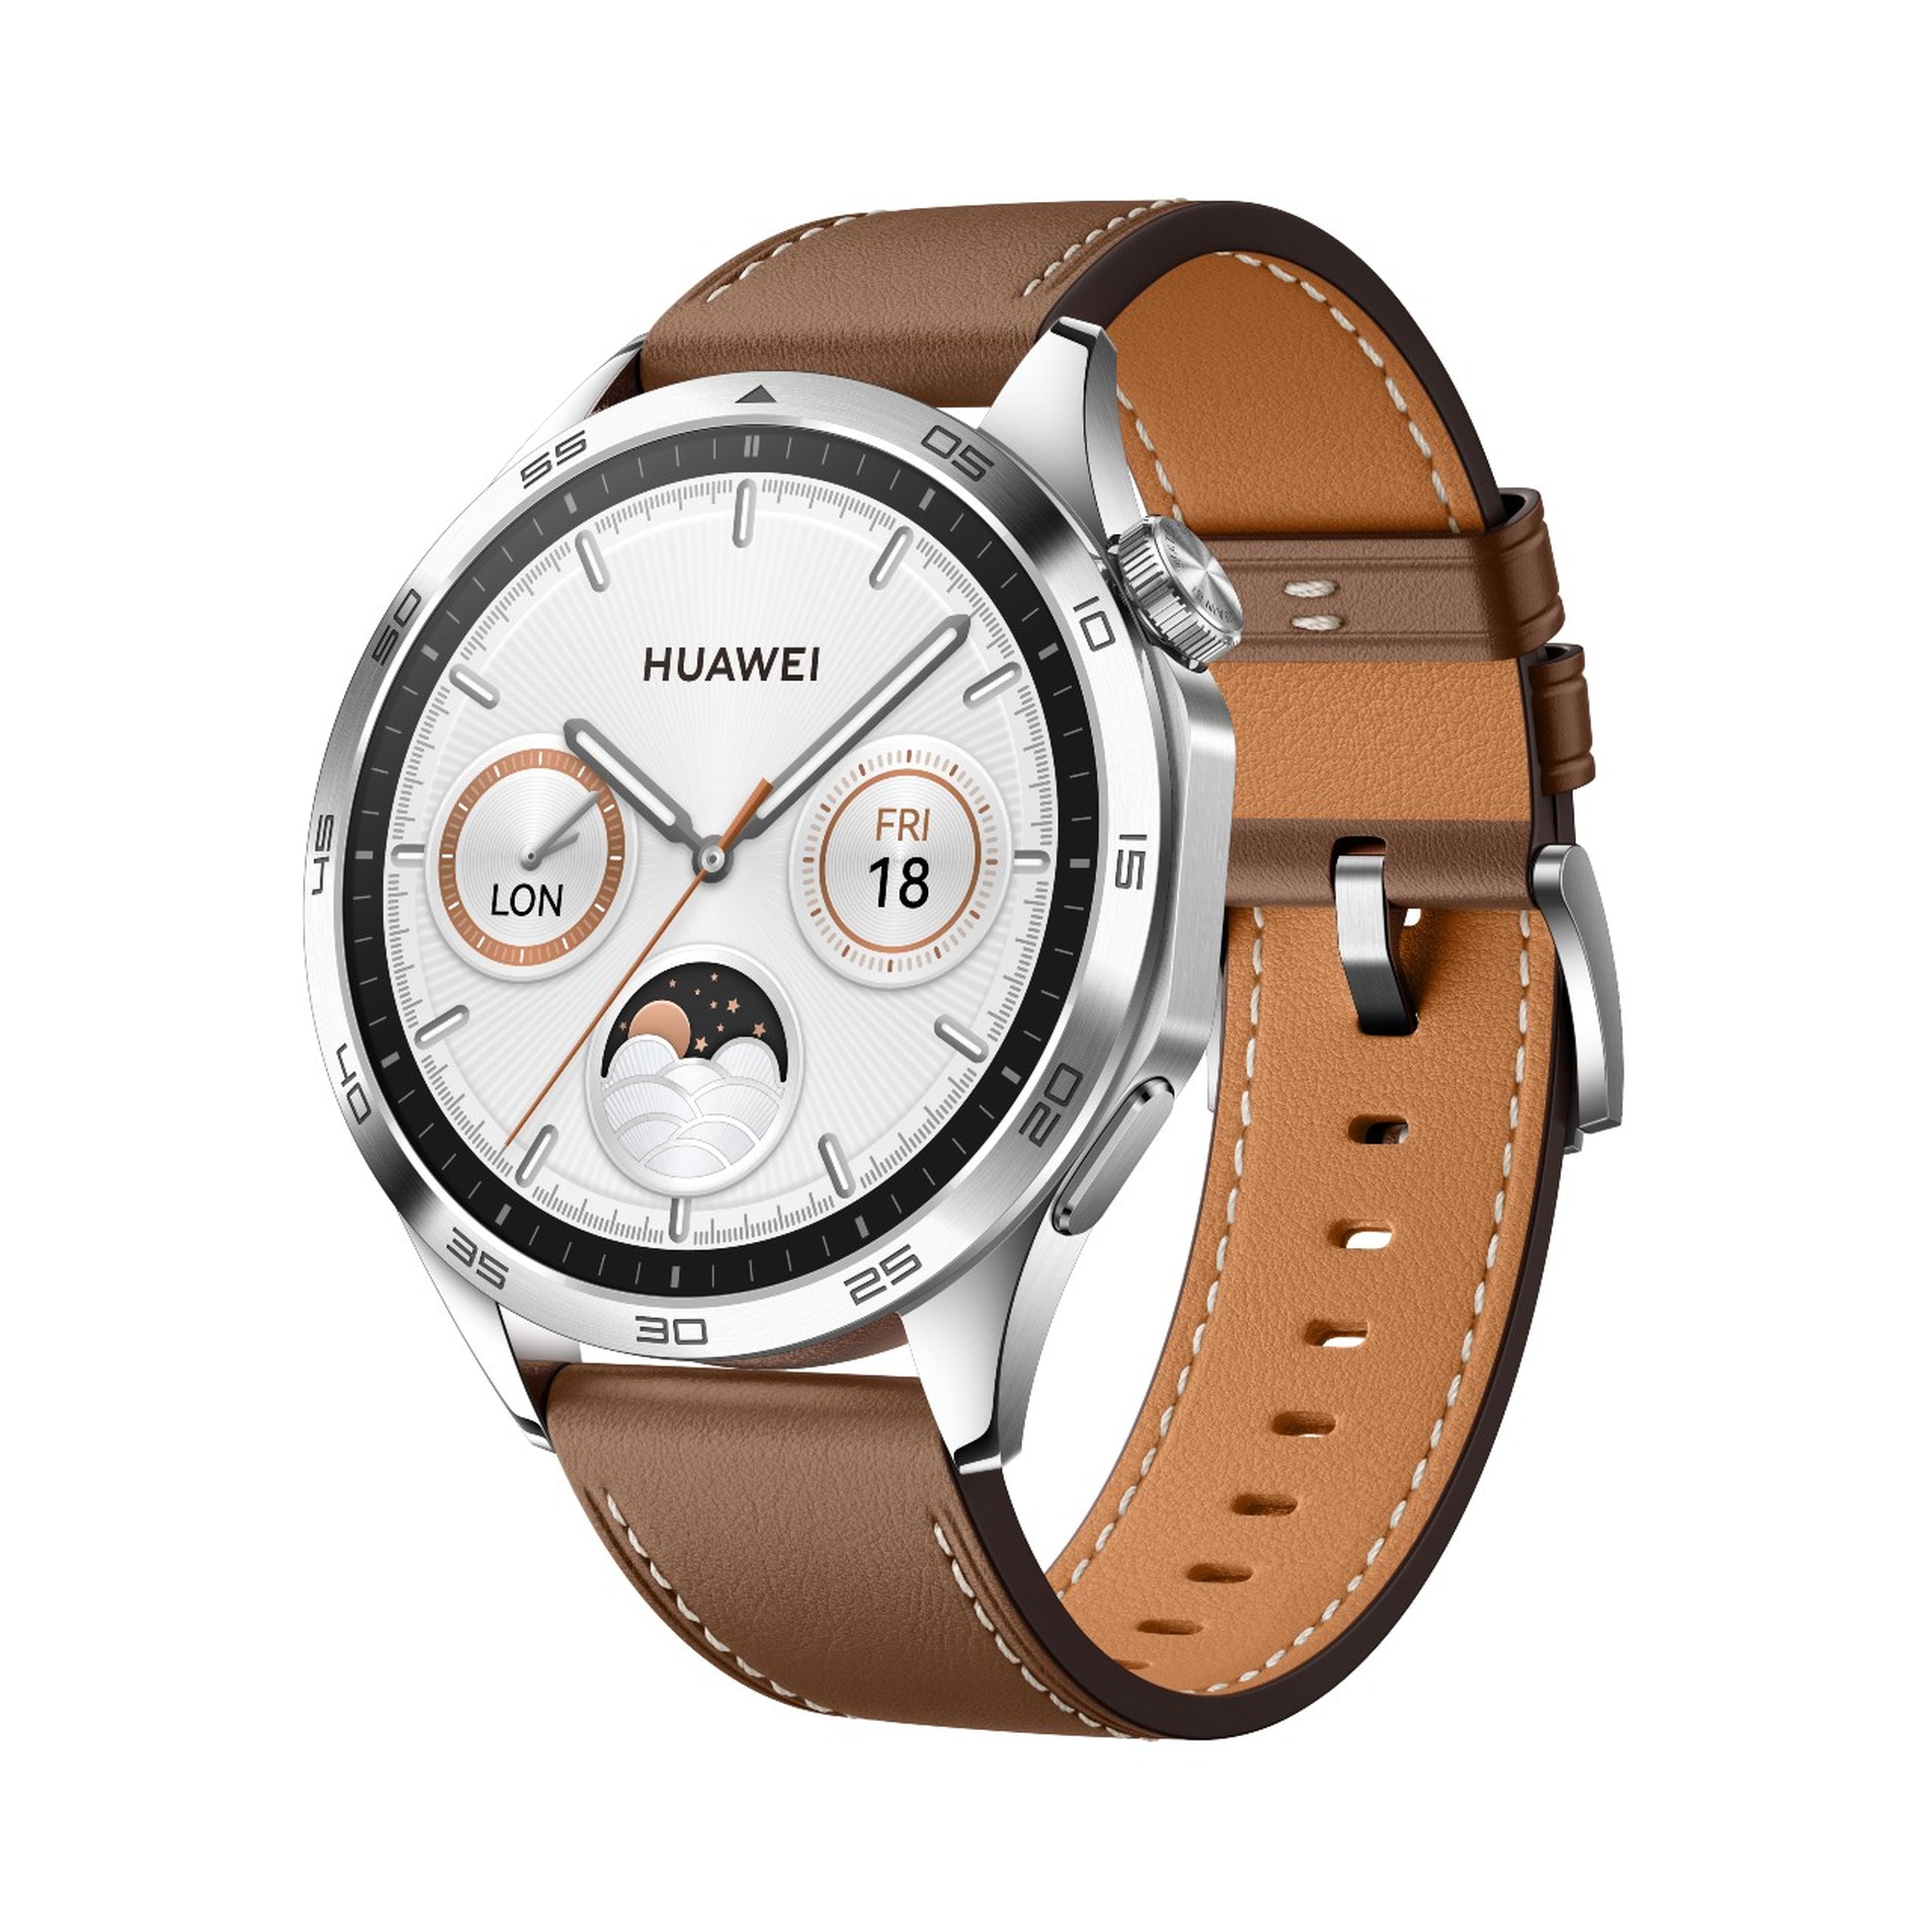 HUAWEI WATCH GT4, el primer dispositivo de la marca con la filosofía "Fashion Forward".